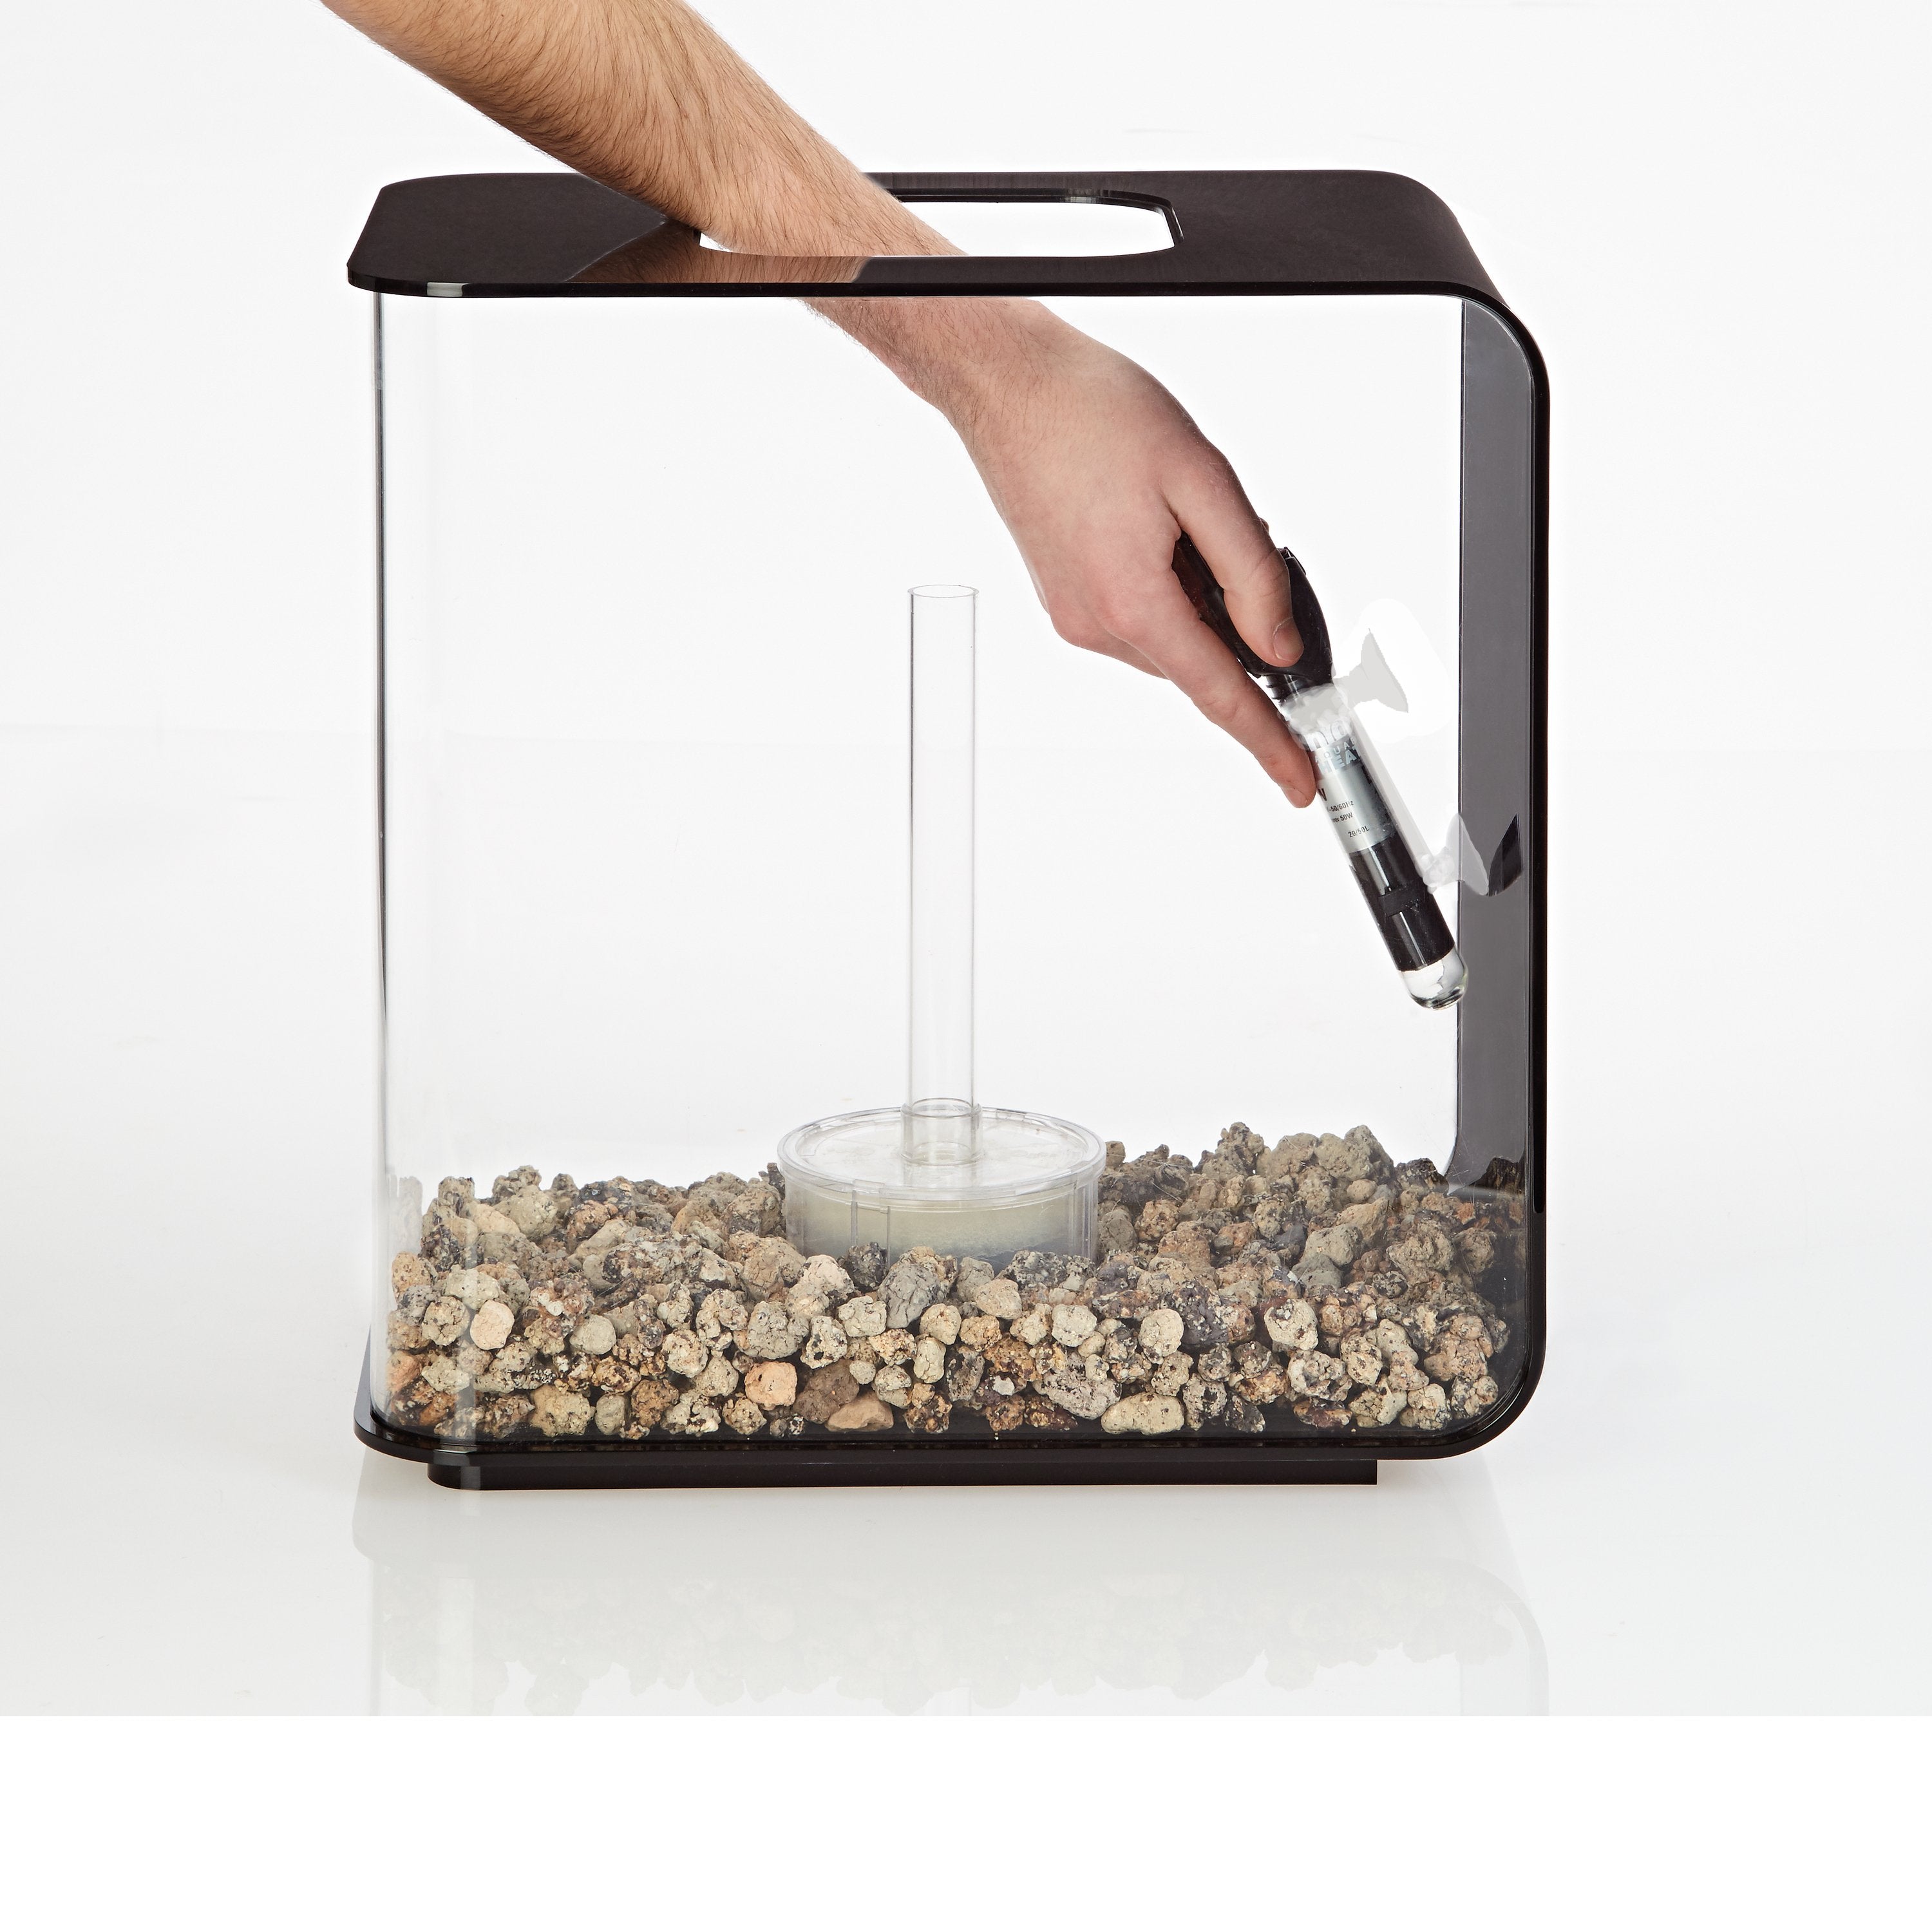 Install the biOrb Aquarium Heater to the side of your aquarium